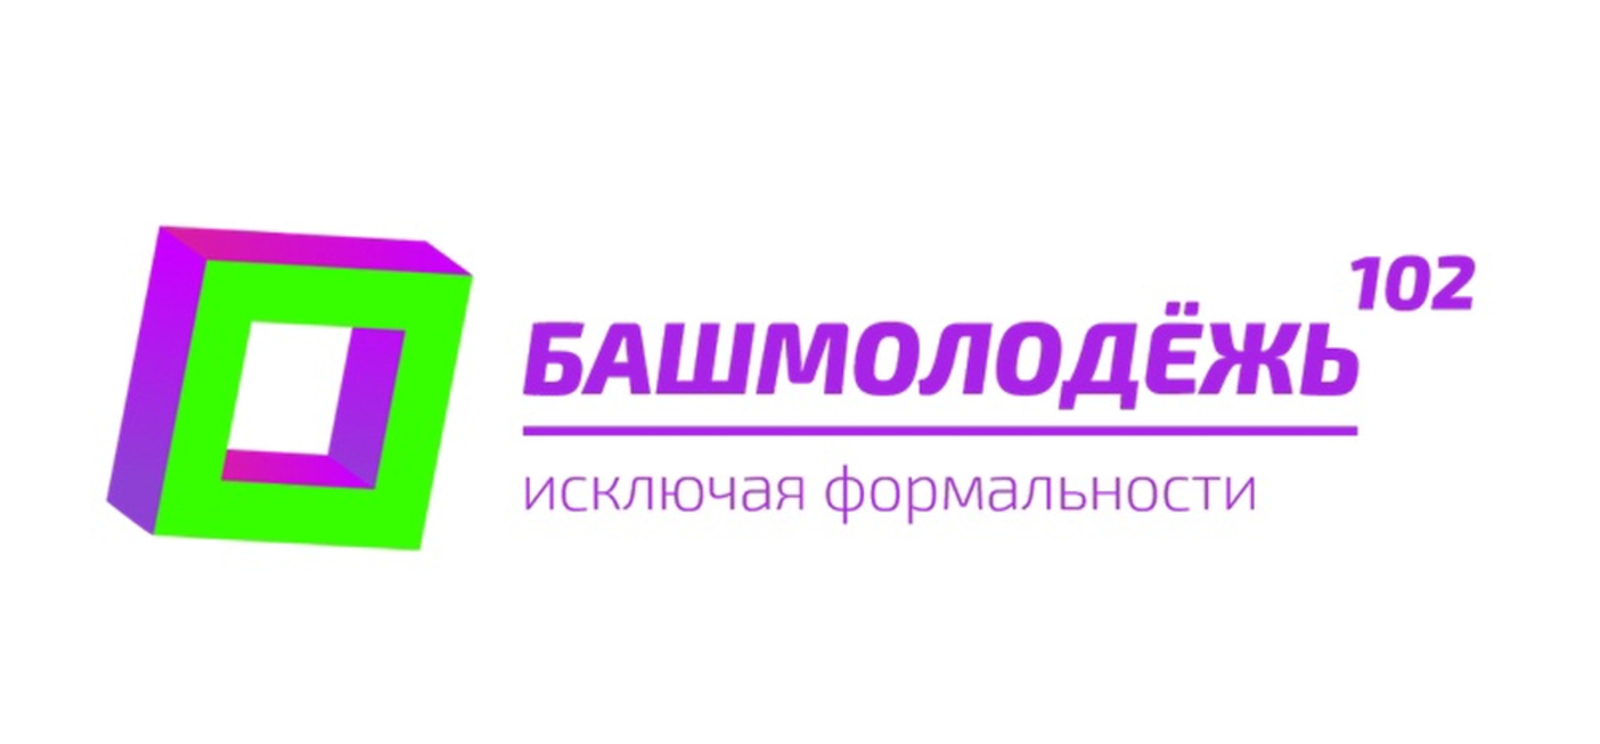 В Башкортостане сентябрь станет месяцем возможностей для студентов